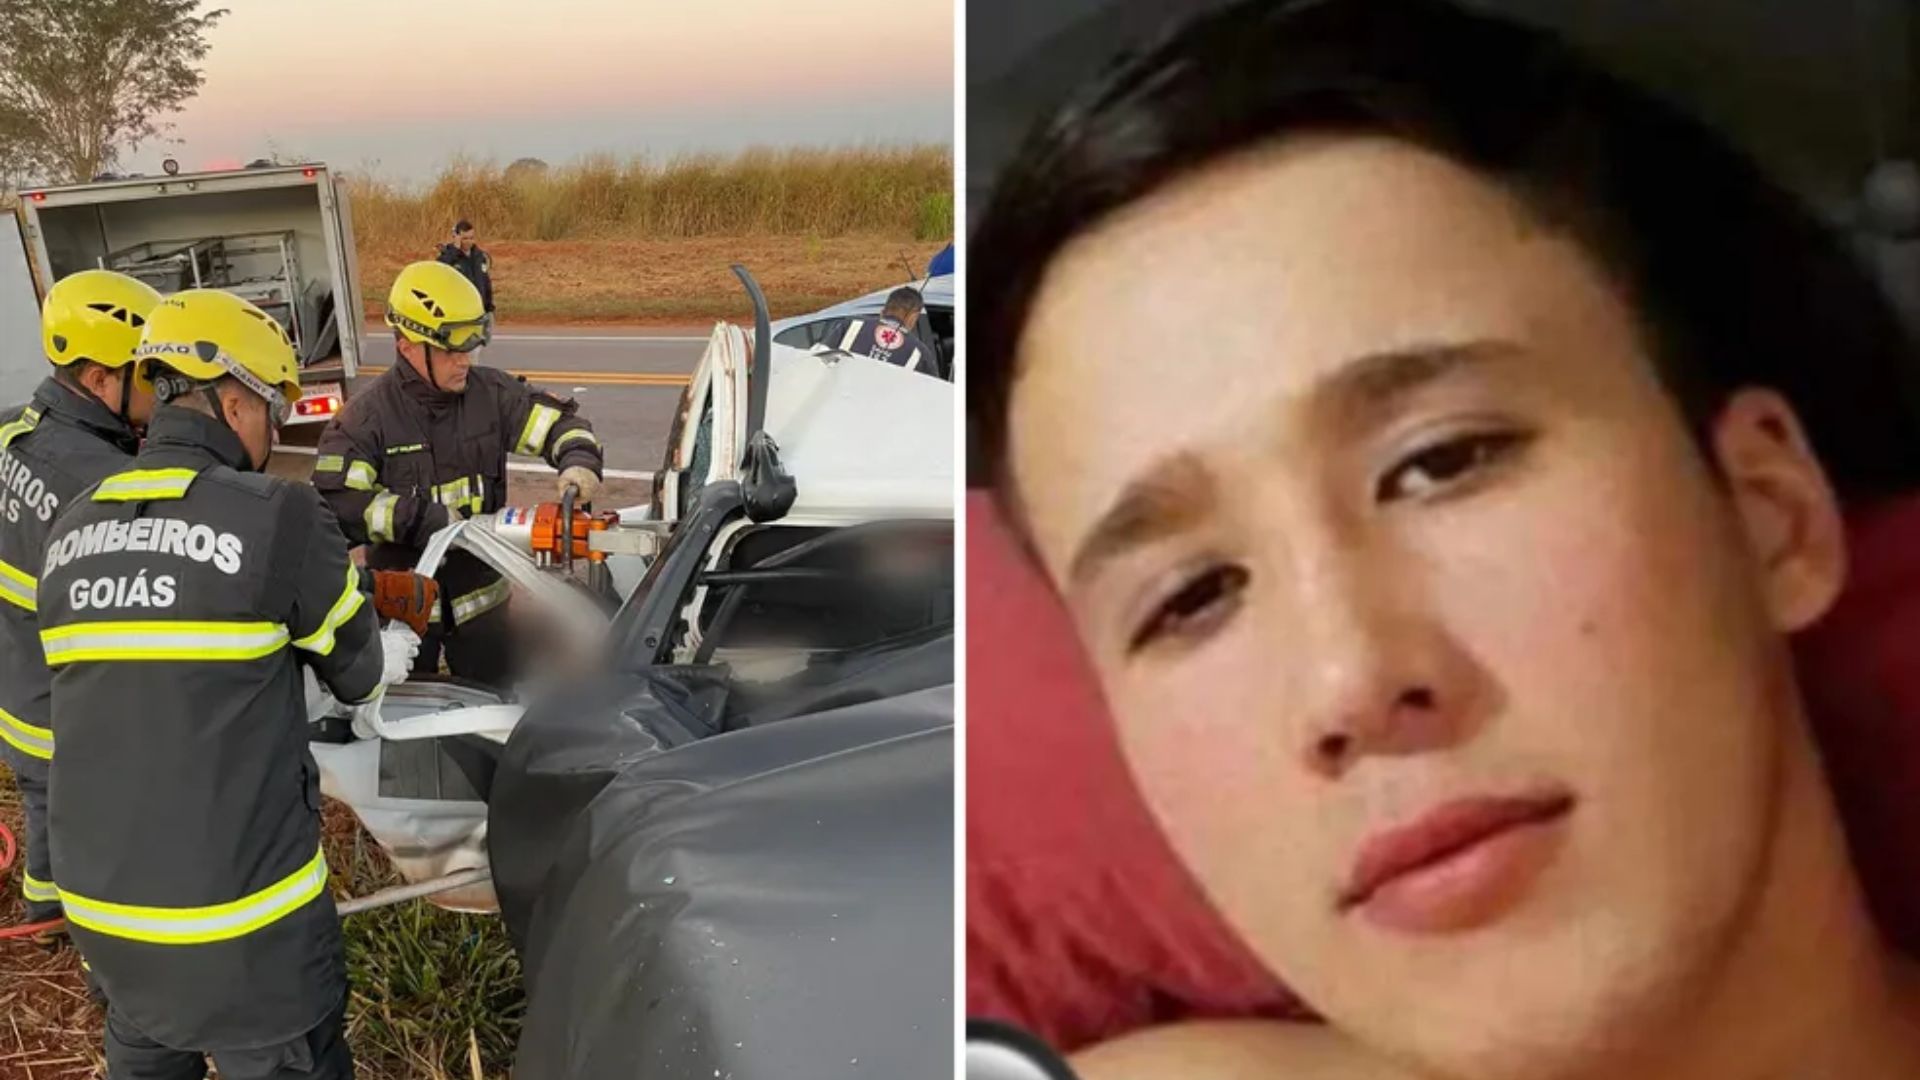 Jovem de 19 anos, morreu em acidente na BR-153, em Rialma, Goiás - Foto: Divulgação/Corpo de Bombeiros e Arquivo pessoal